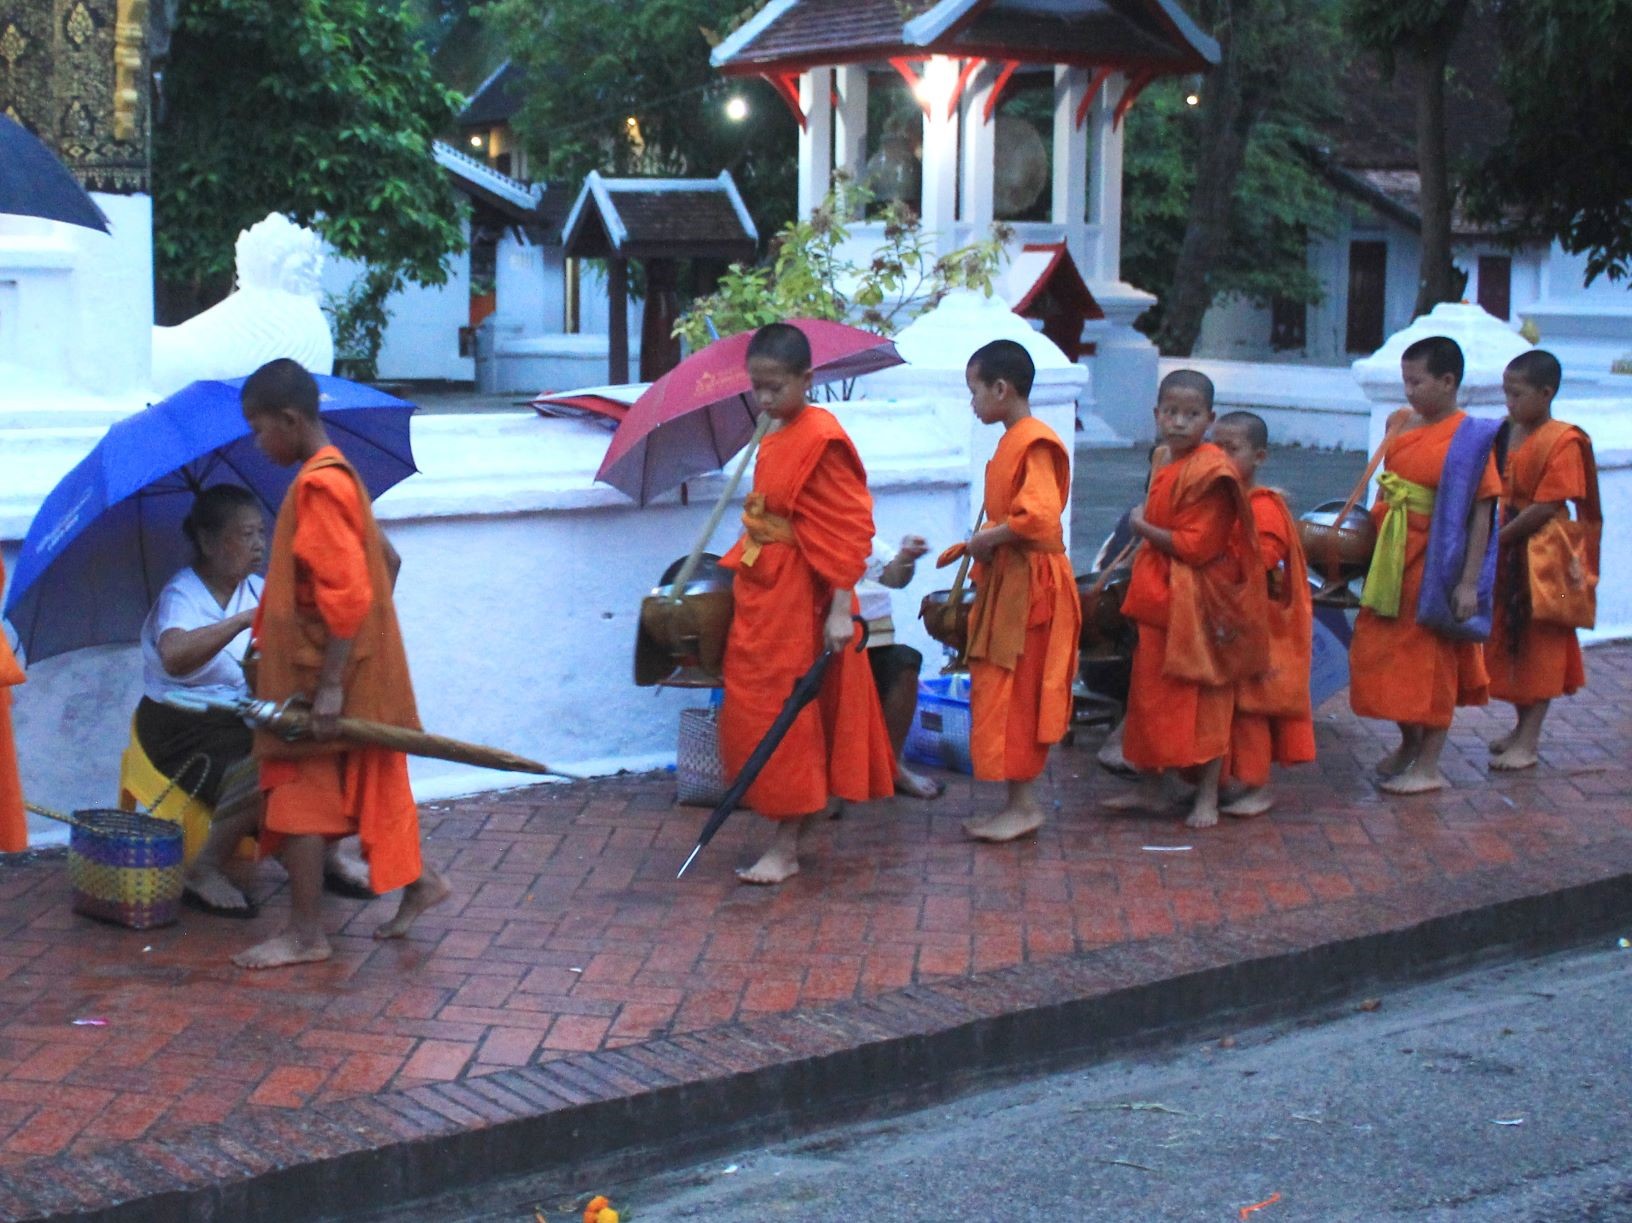 日の出とともに托鉢を始める僧侶たち